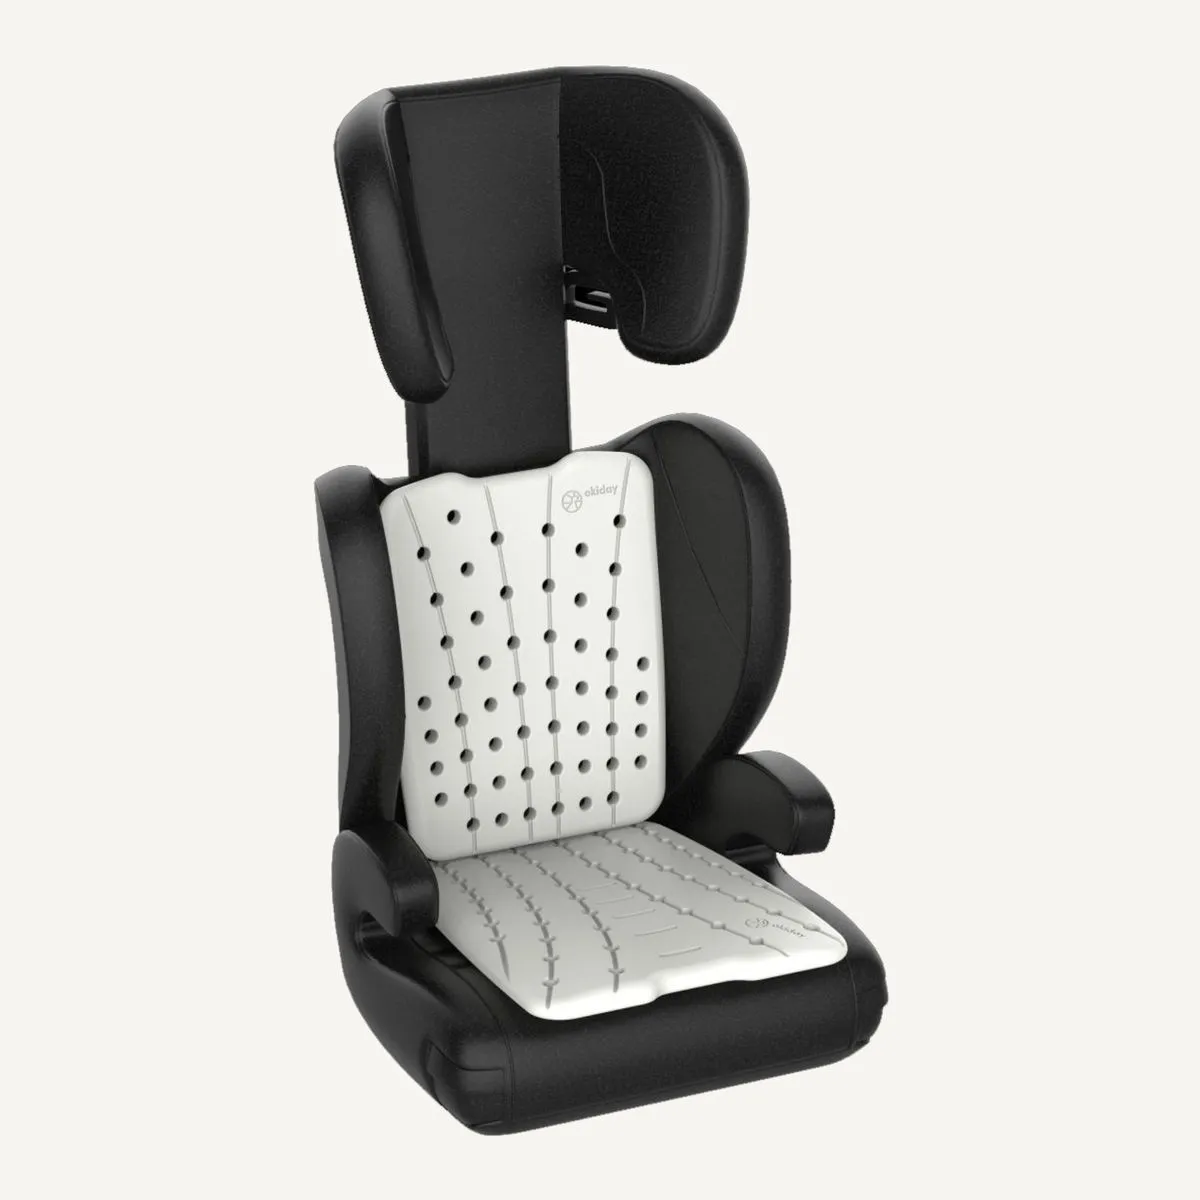 Okiday zestaw wkładek XL: oparcie, siedzisko akcesoria podróżne do fotelika samochodowego